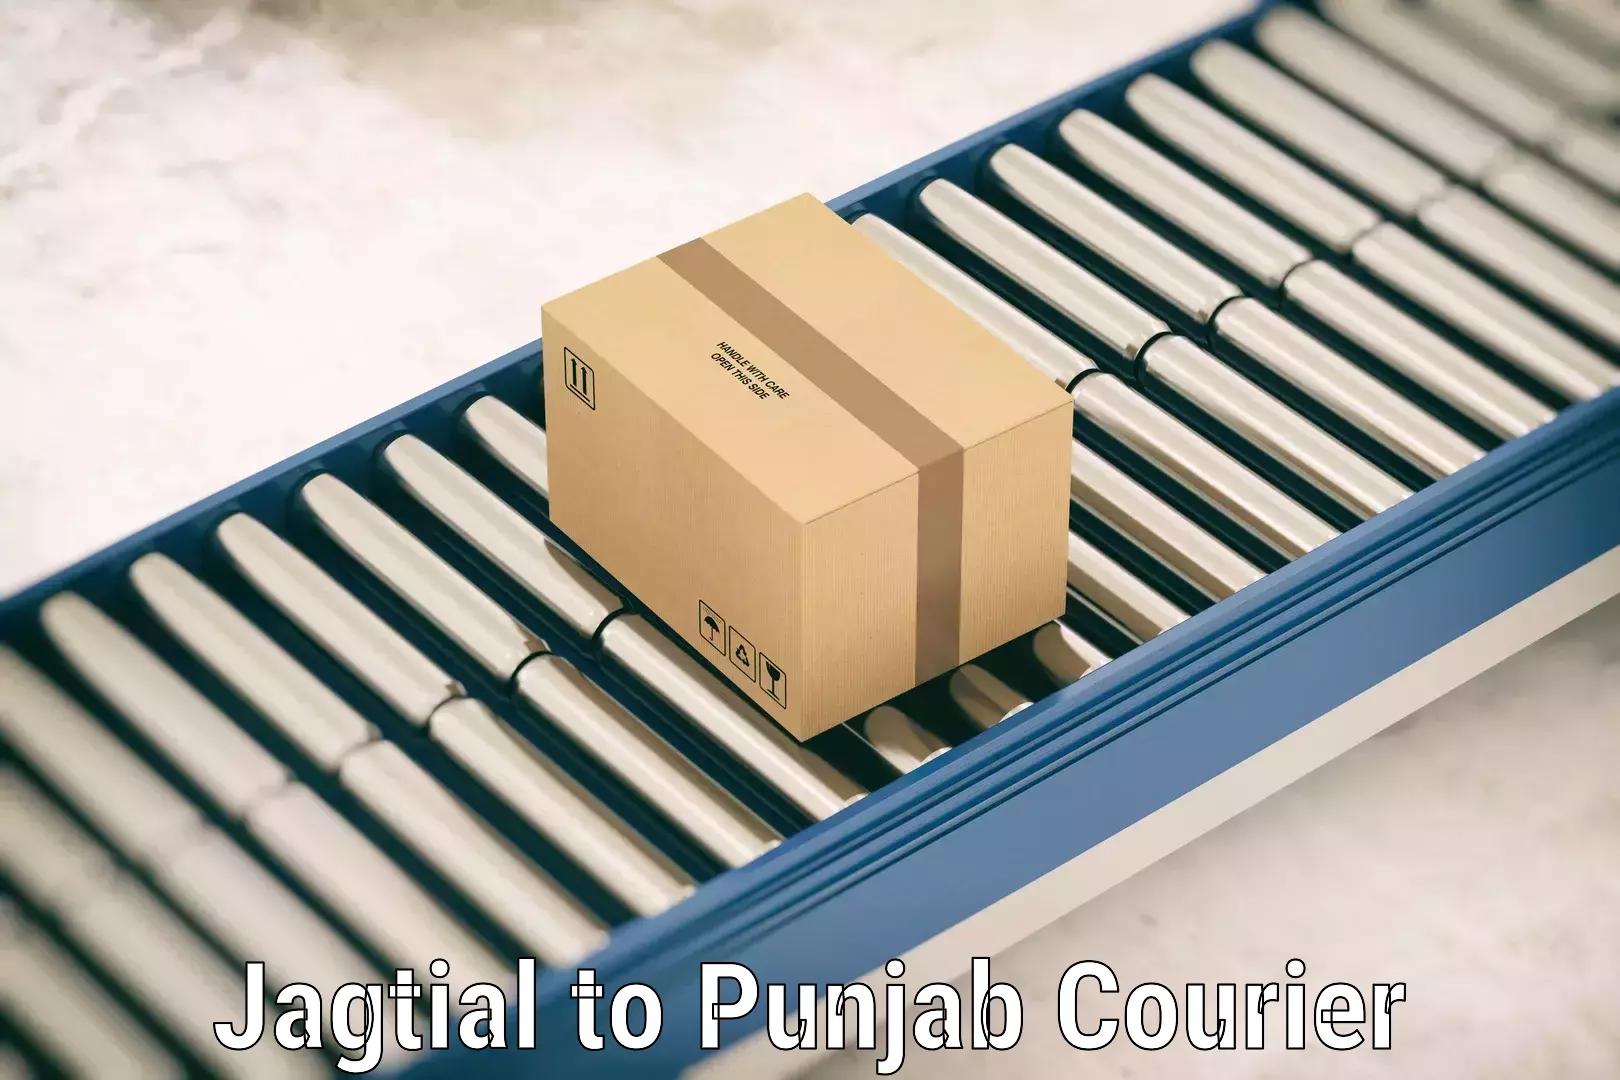 Luggage delivery app Jagtial to Punjab